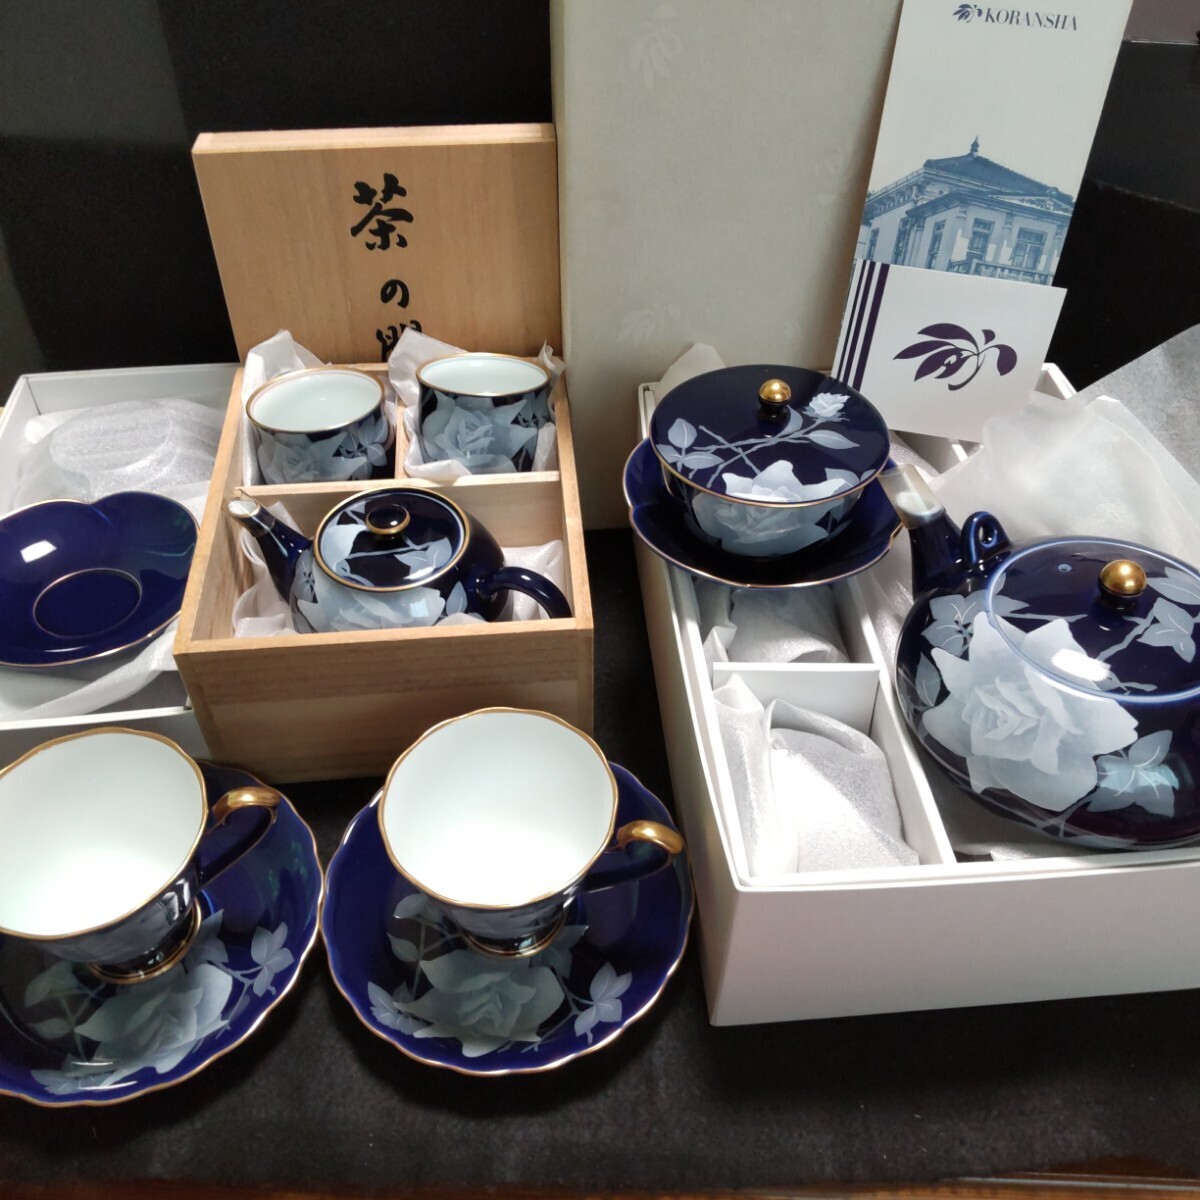 香蘭社 食器4点セット 瑠璃 薔薇 茶器セット 茶の間セット ペアカップ&ソーサー 茶托の画像1